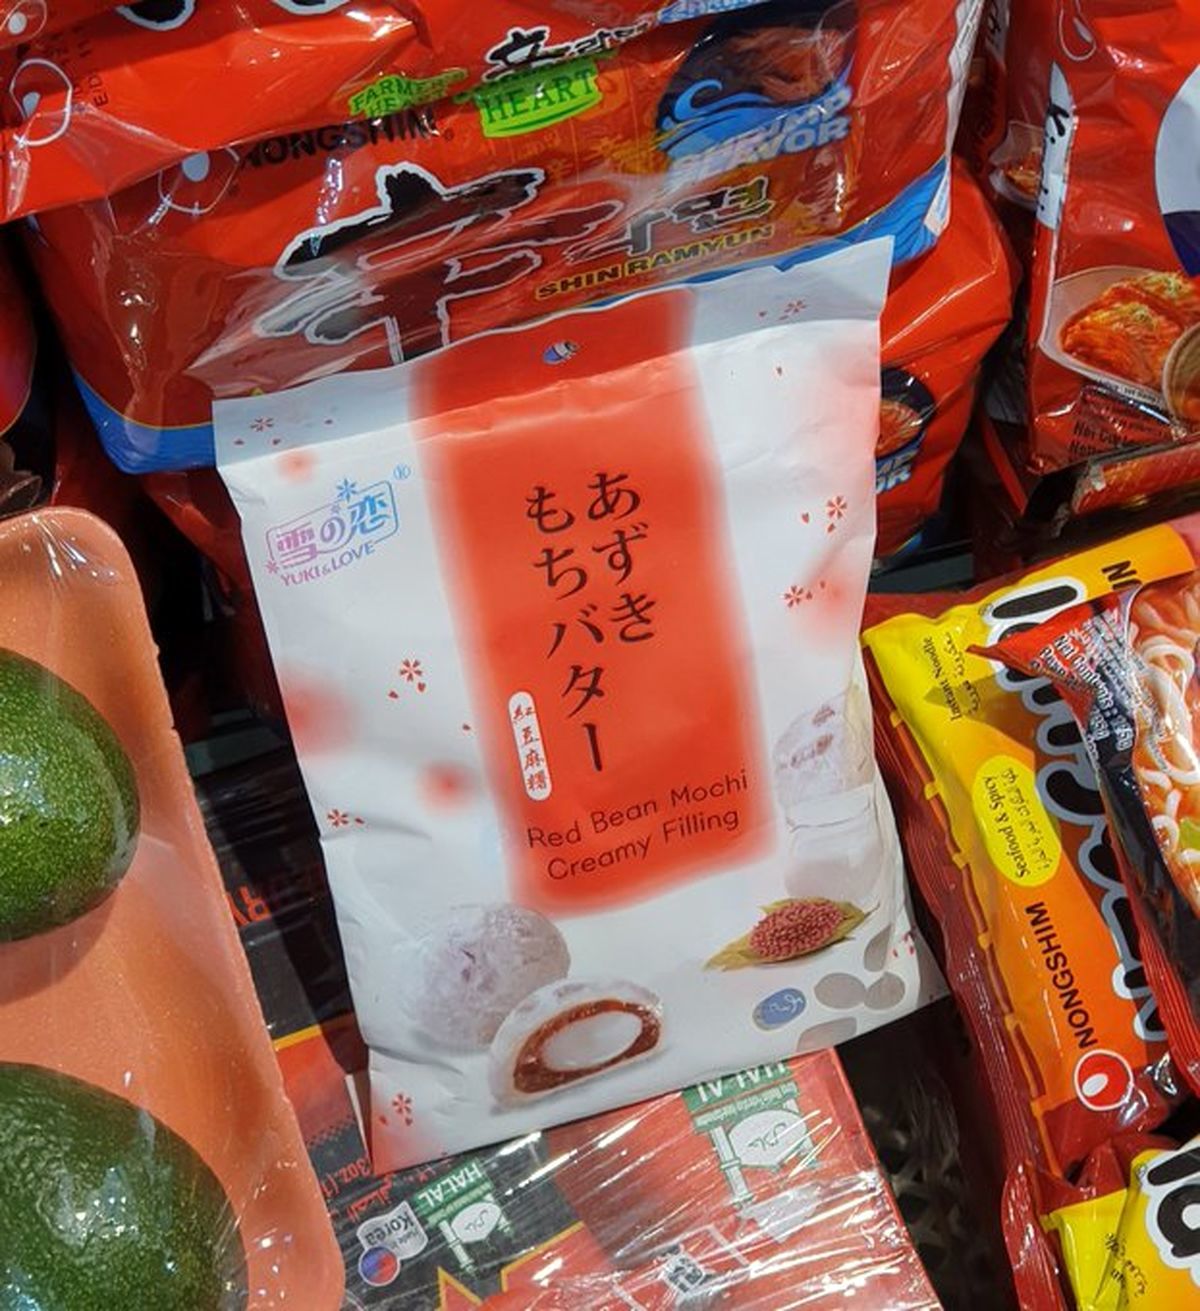 این شیرینی خطرناک ژاپنی به بازارهای تهران رسید +عکس 